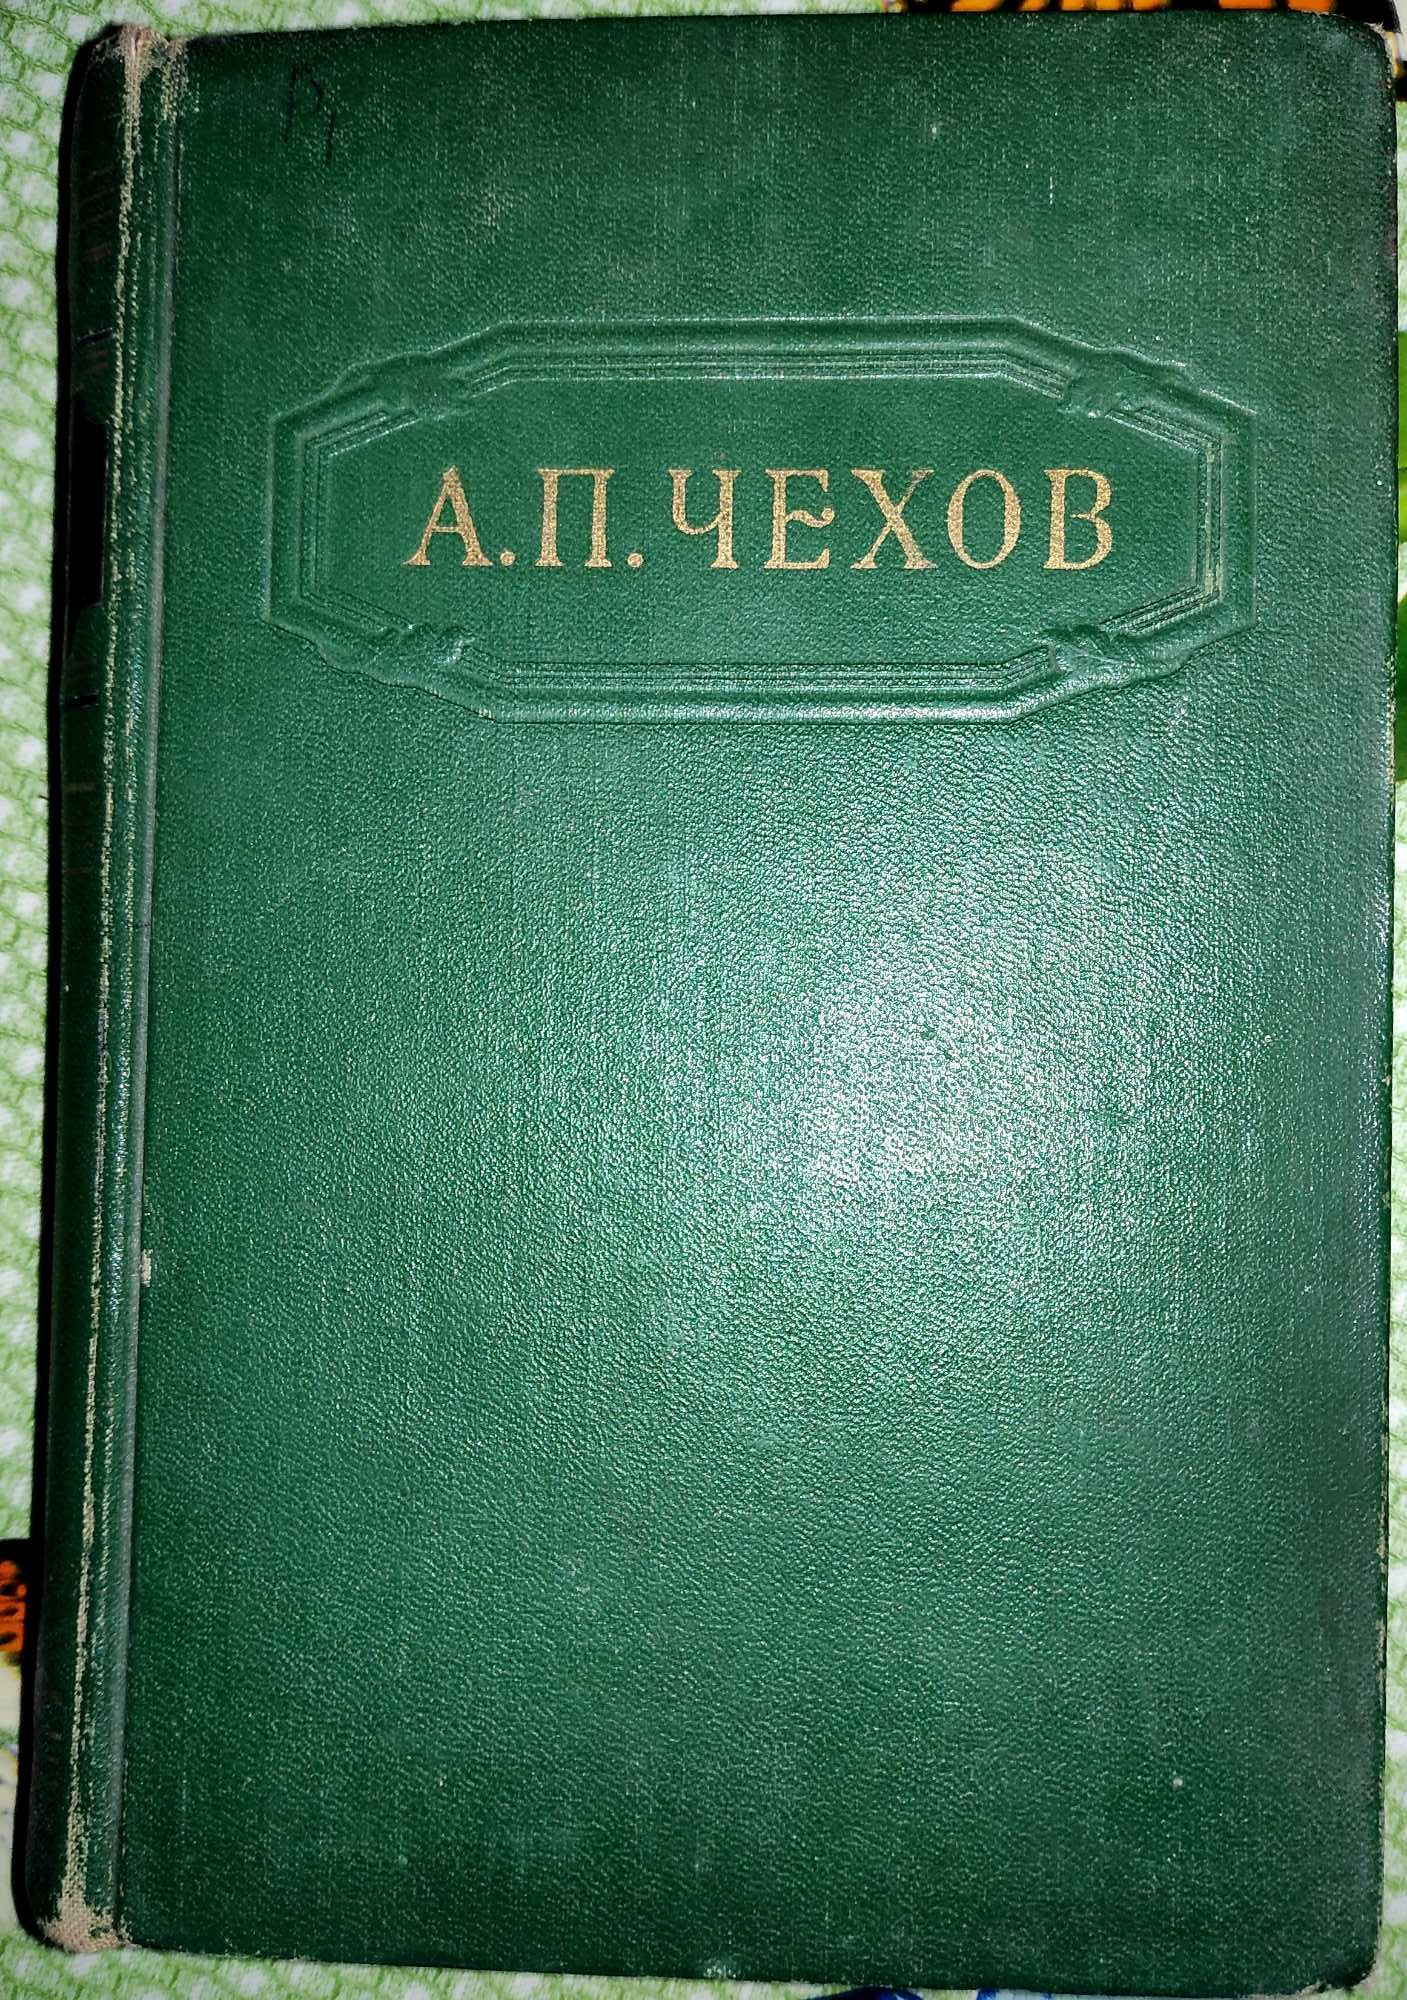 1954 г. Чехов. "Собрание сочинений в 12 томах". Тома 1, 2, 4, 6 - 8.